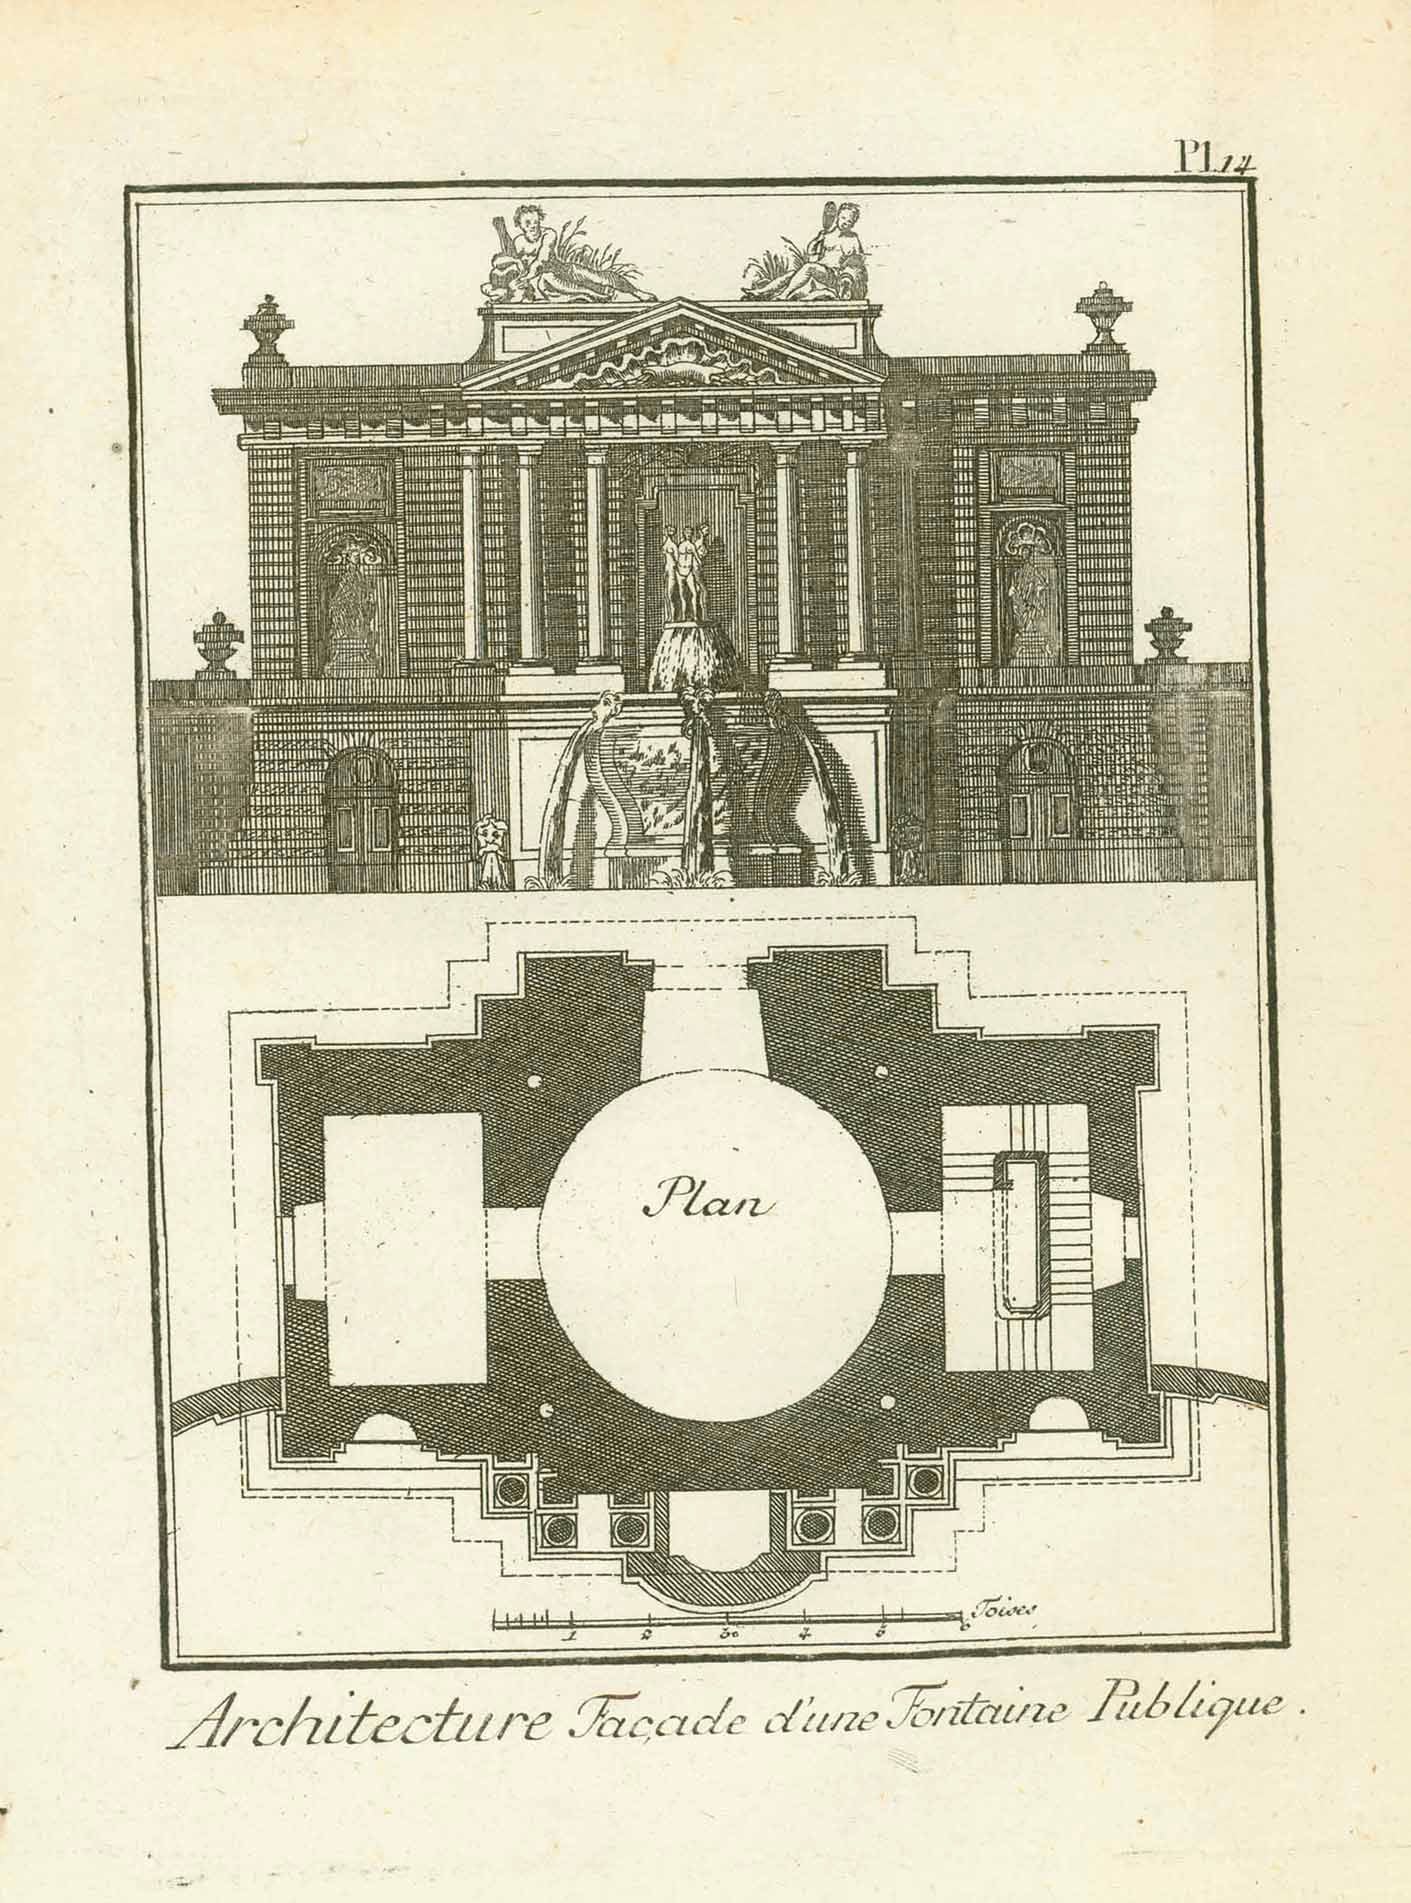 "Architecture Facade d'une Fontaine Publique" (Facade of a public fountain)  Copper etching published ca 1775.  Original antique print  